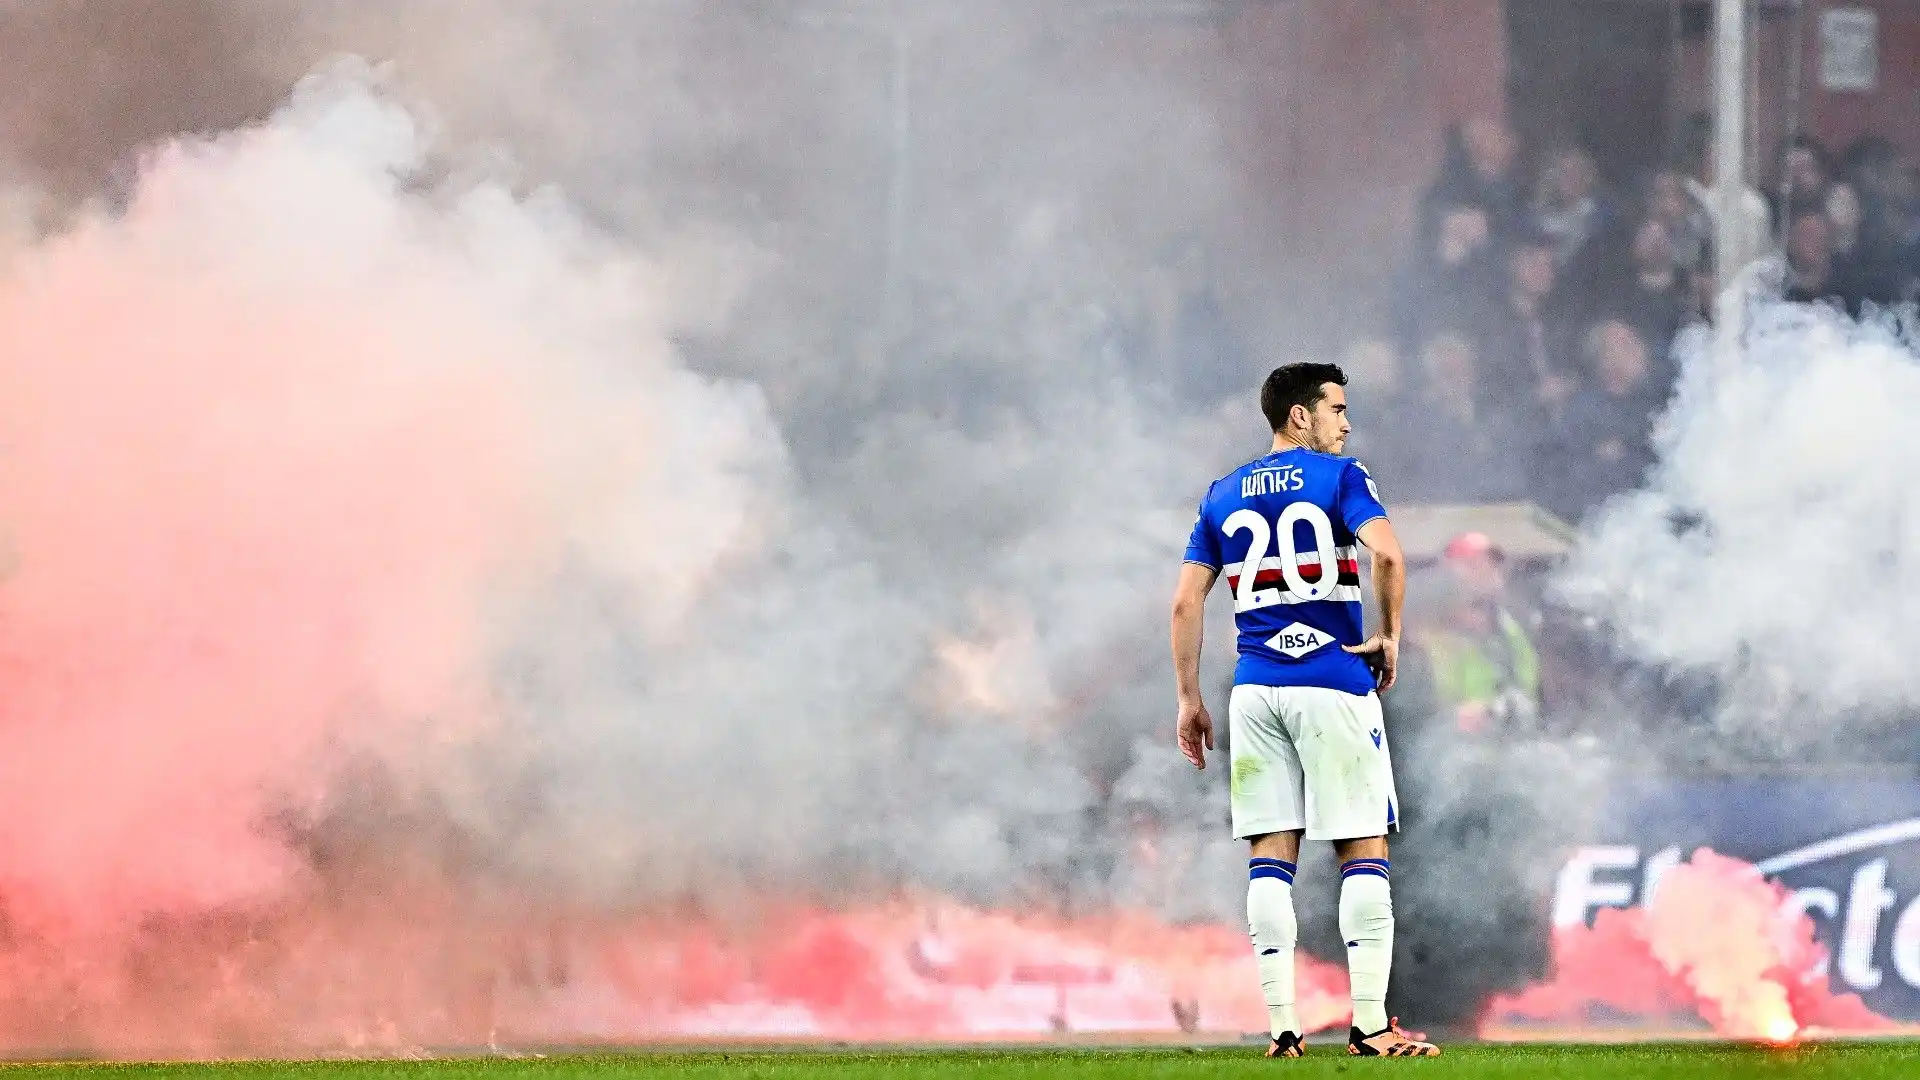 La Sampdoria sta disputando una stagione molto deludente, tra le più negative degli ultimi anni